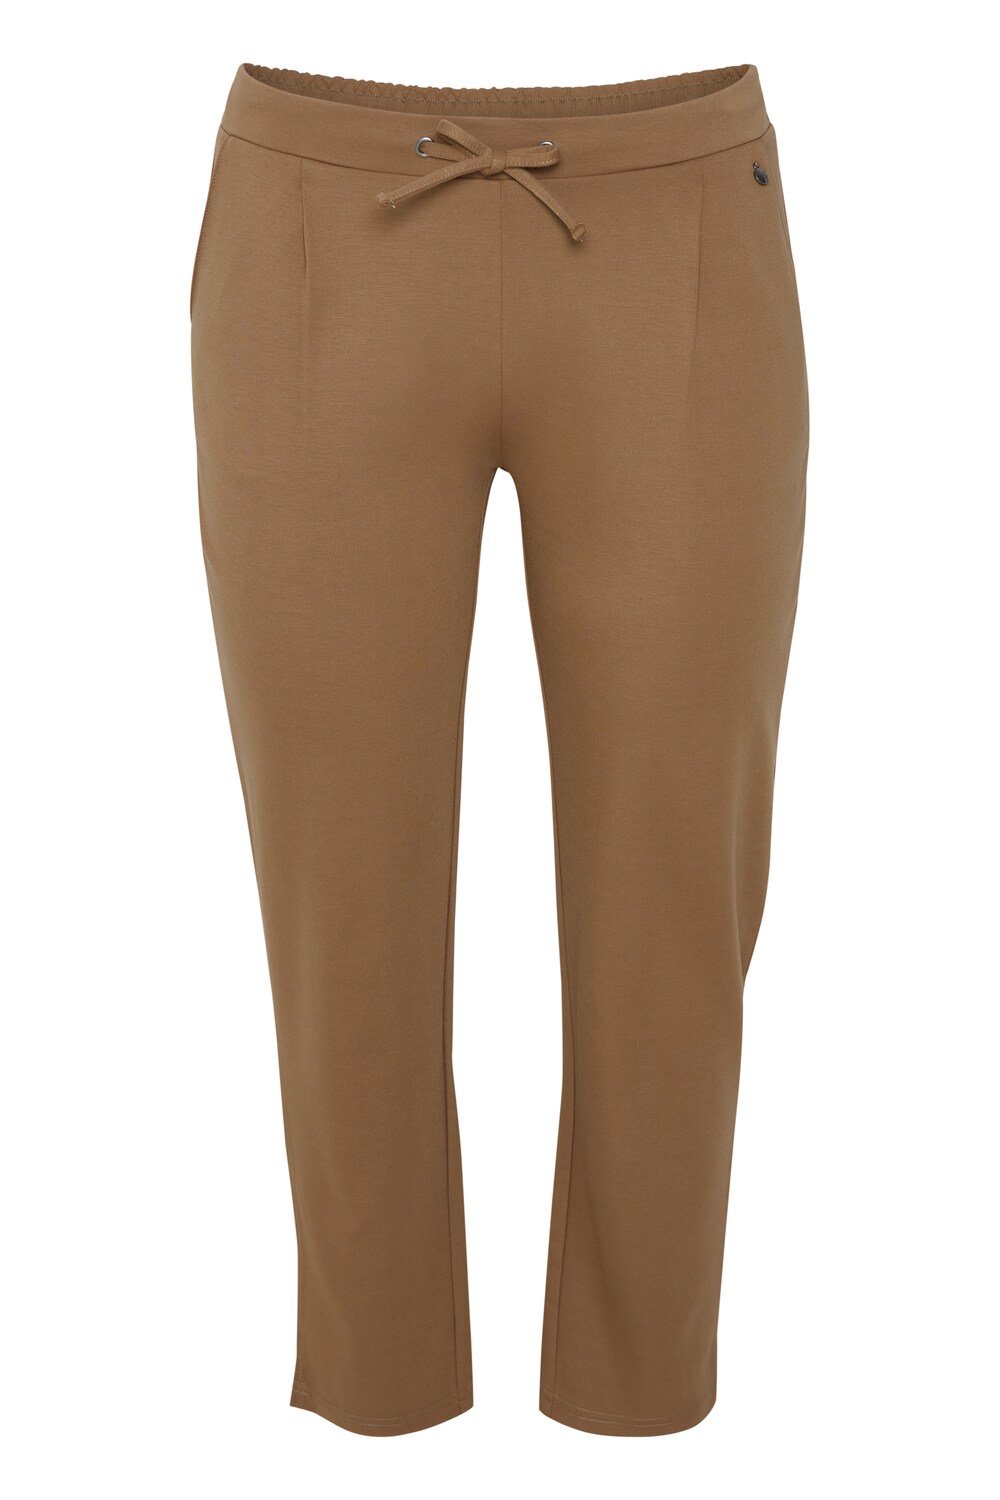 Узкие брюки со складками спереди Fransa Curve STRETCH, коричневый